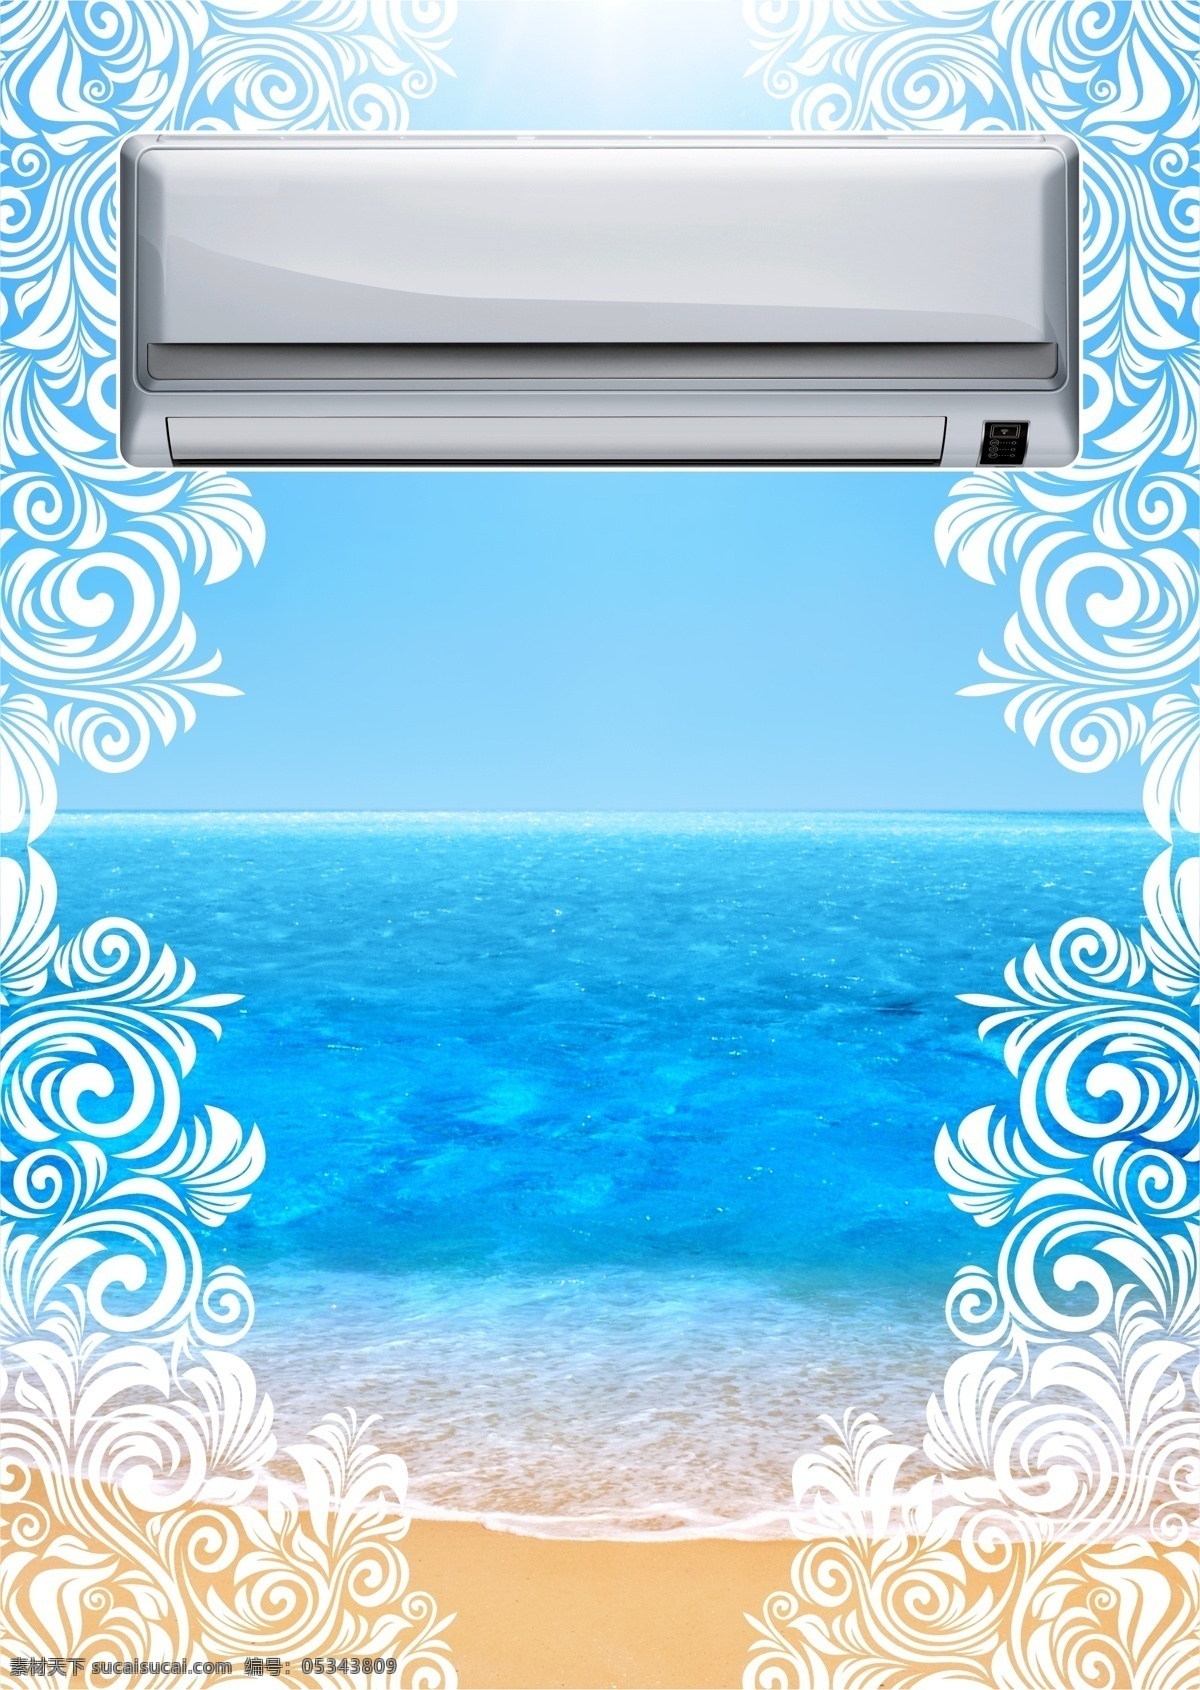 空调海报 家电 电器 空调 空气清新 蓝色 大海 花纹 自然 家具电器 生活百科 白色